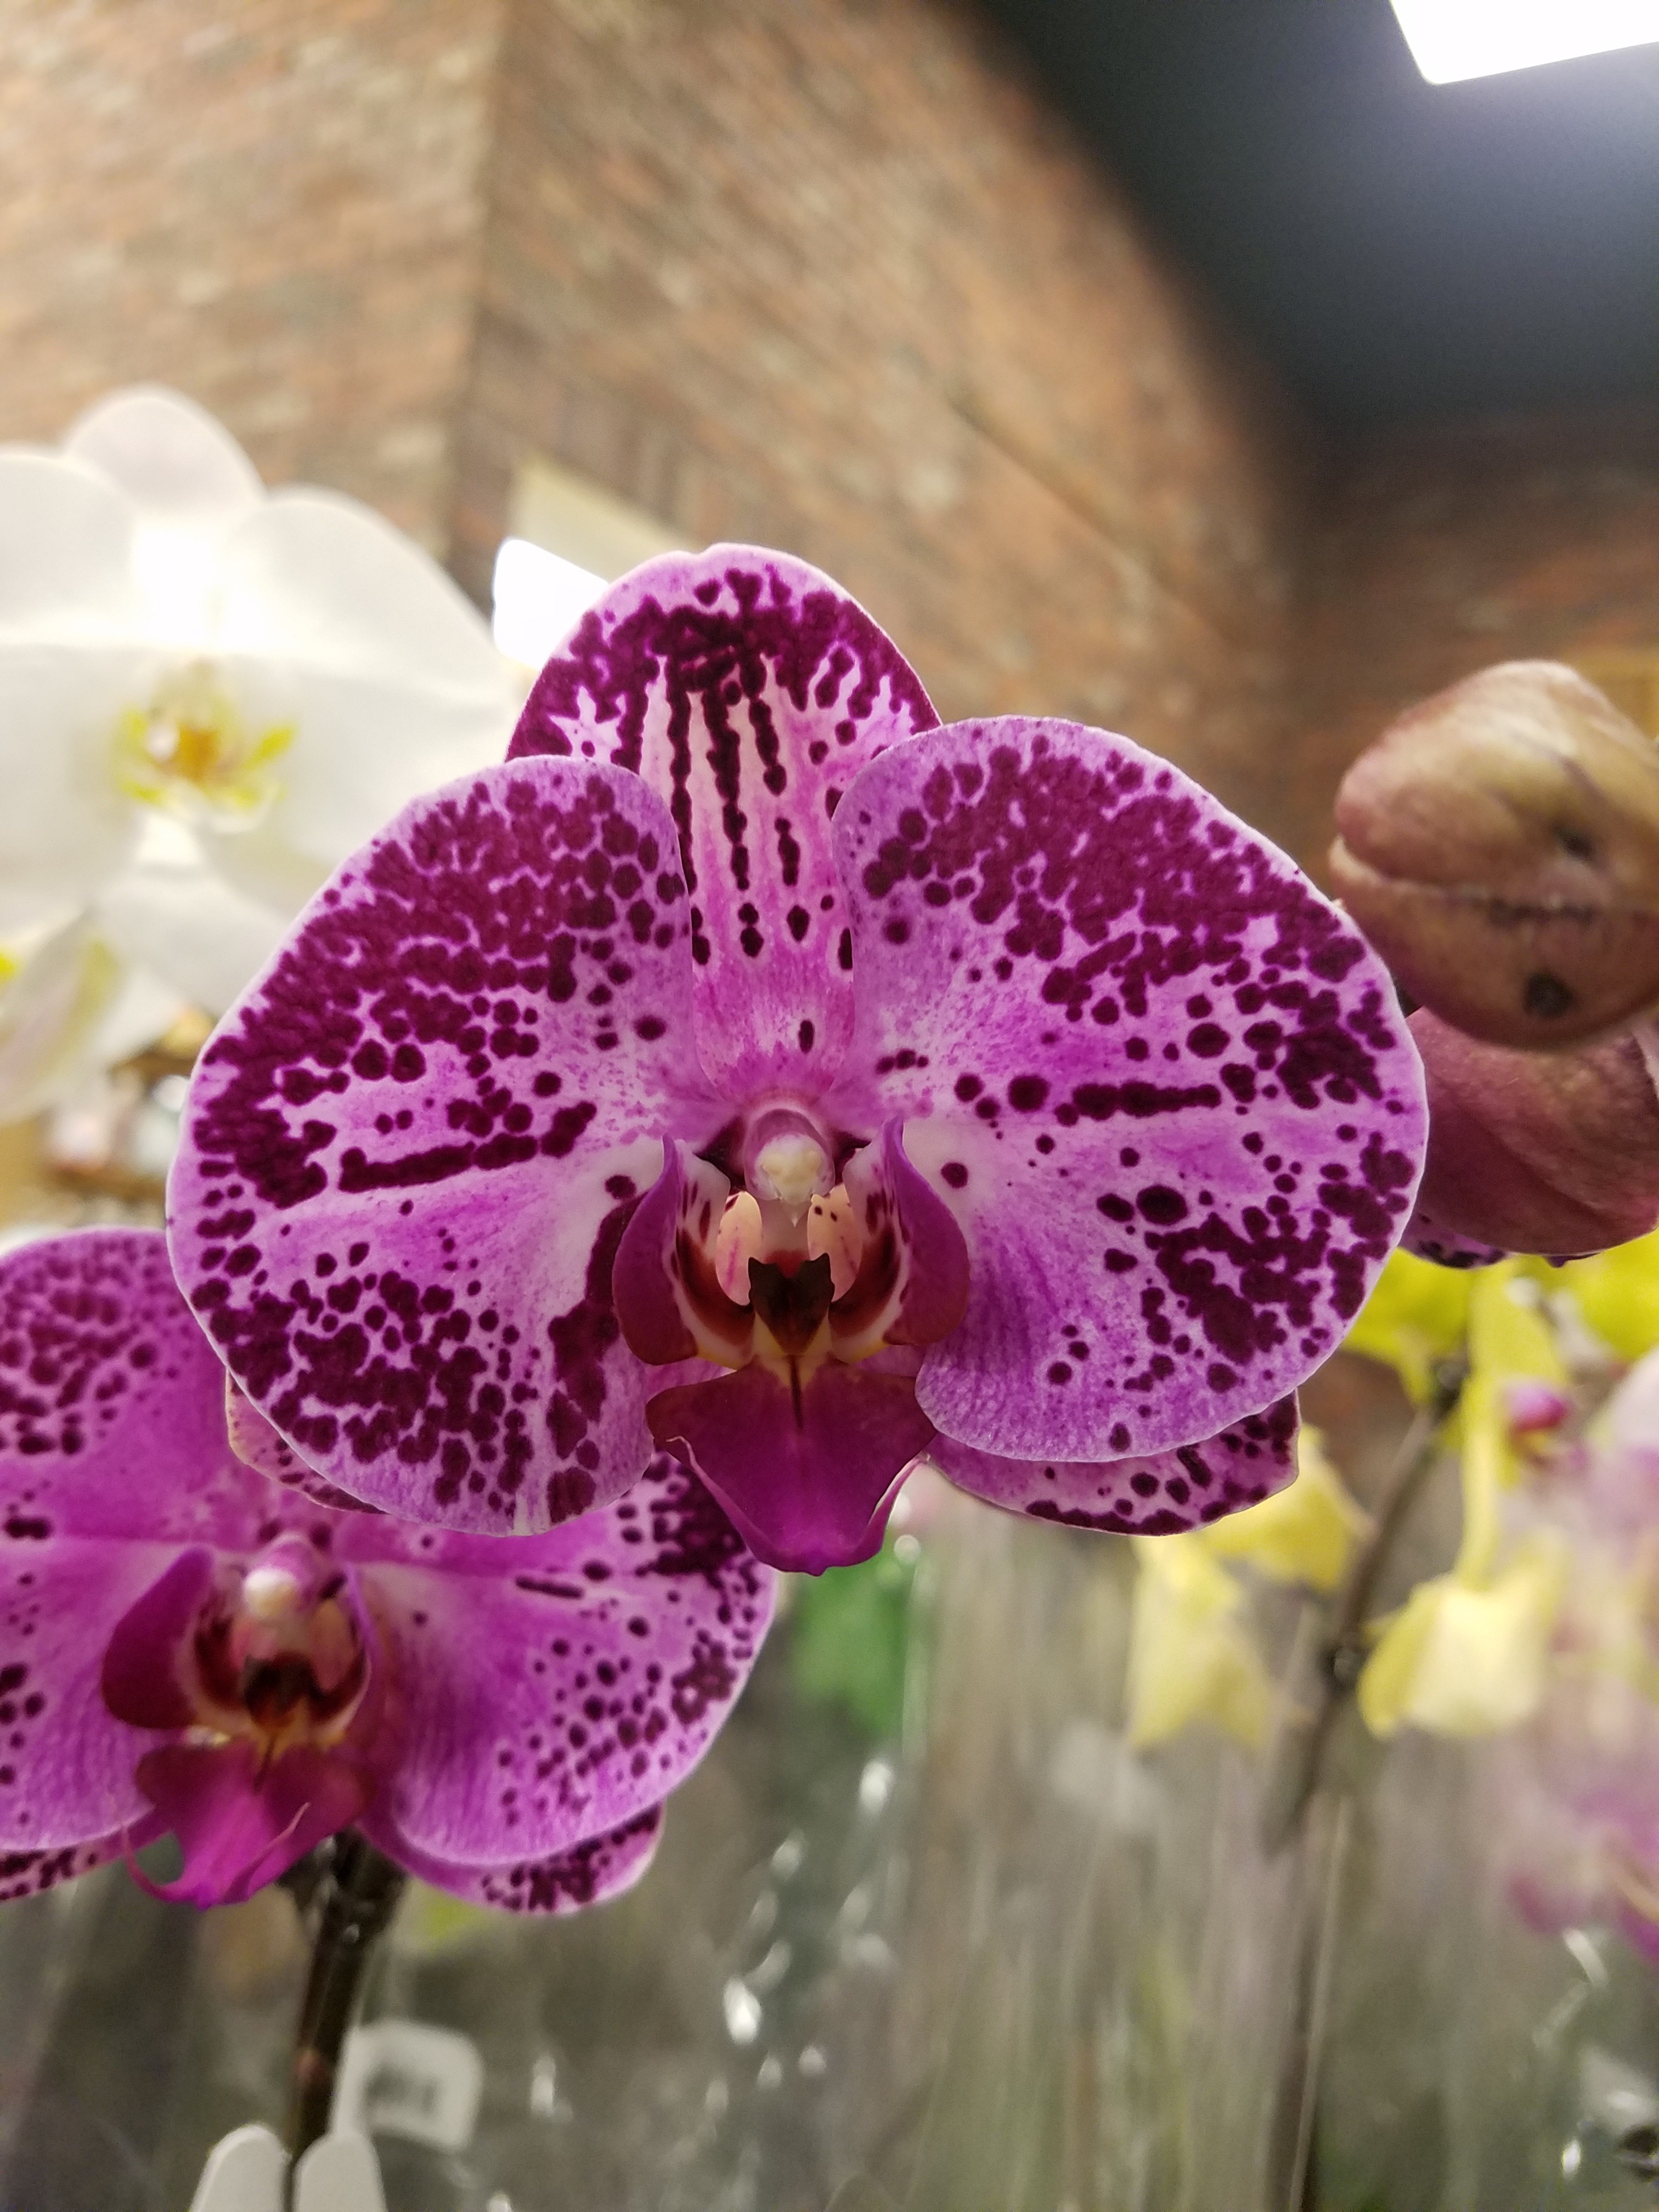 орхидея карибская мечта описание